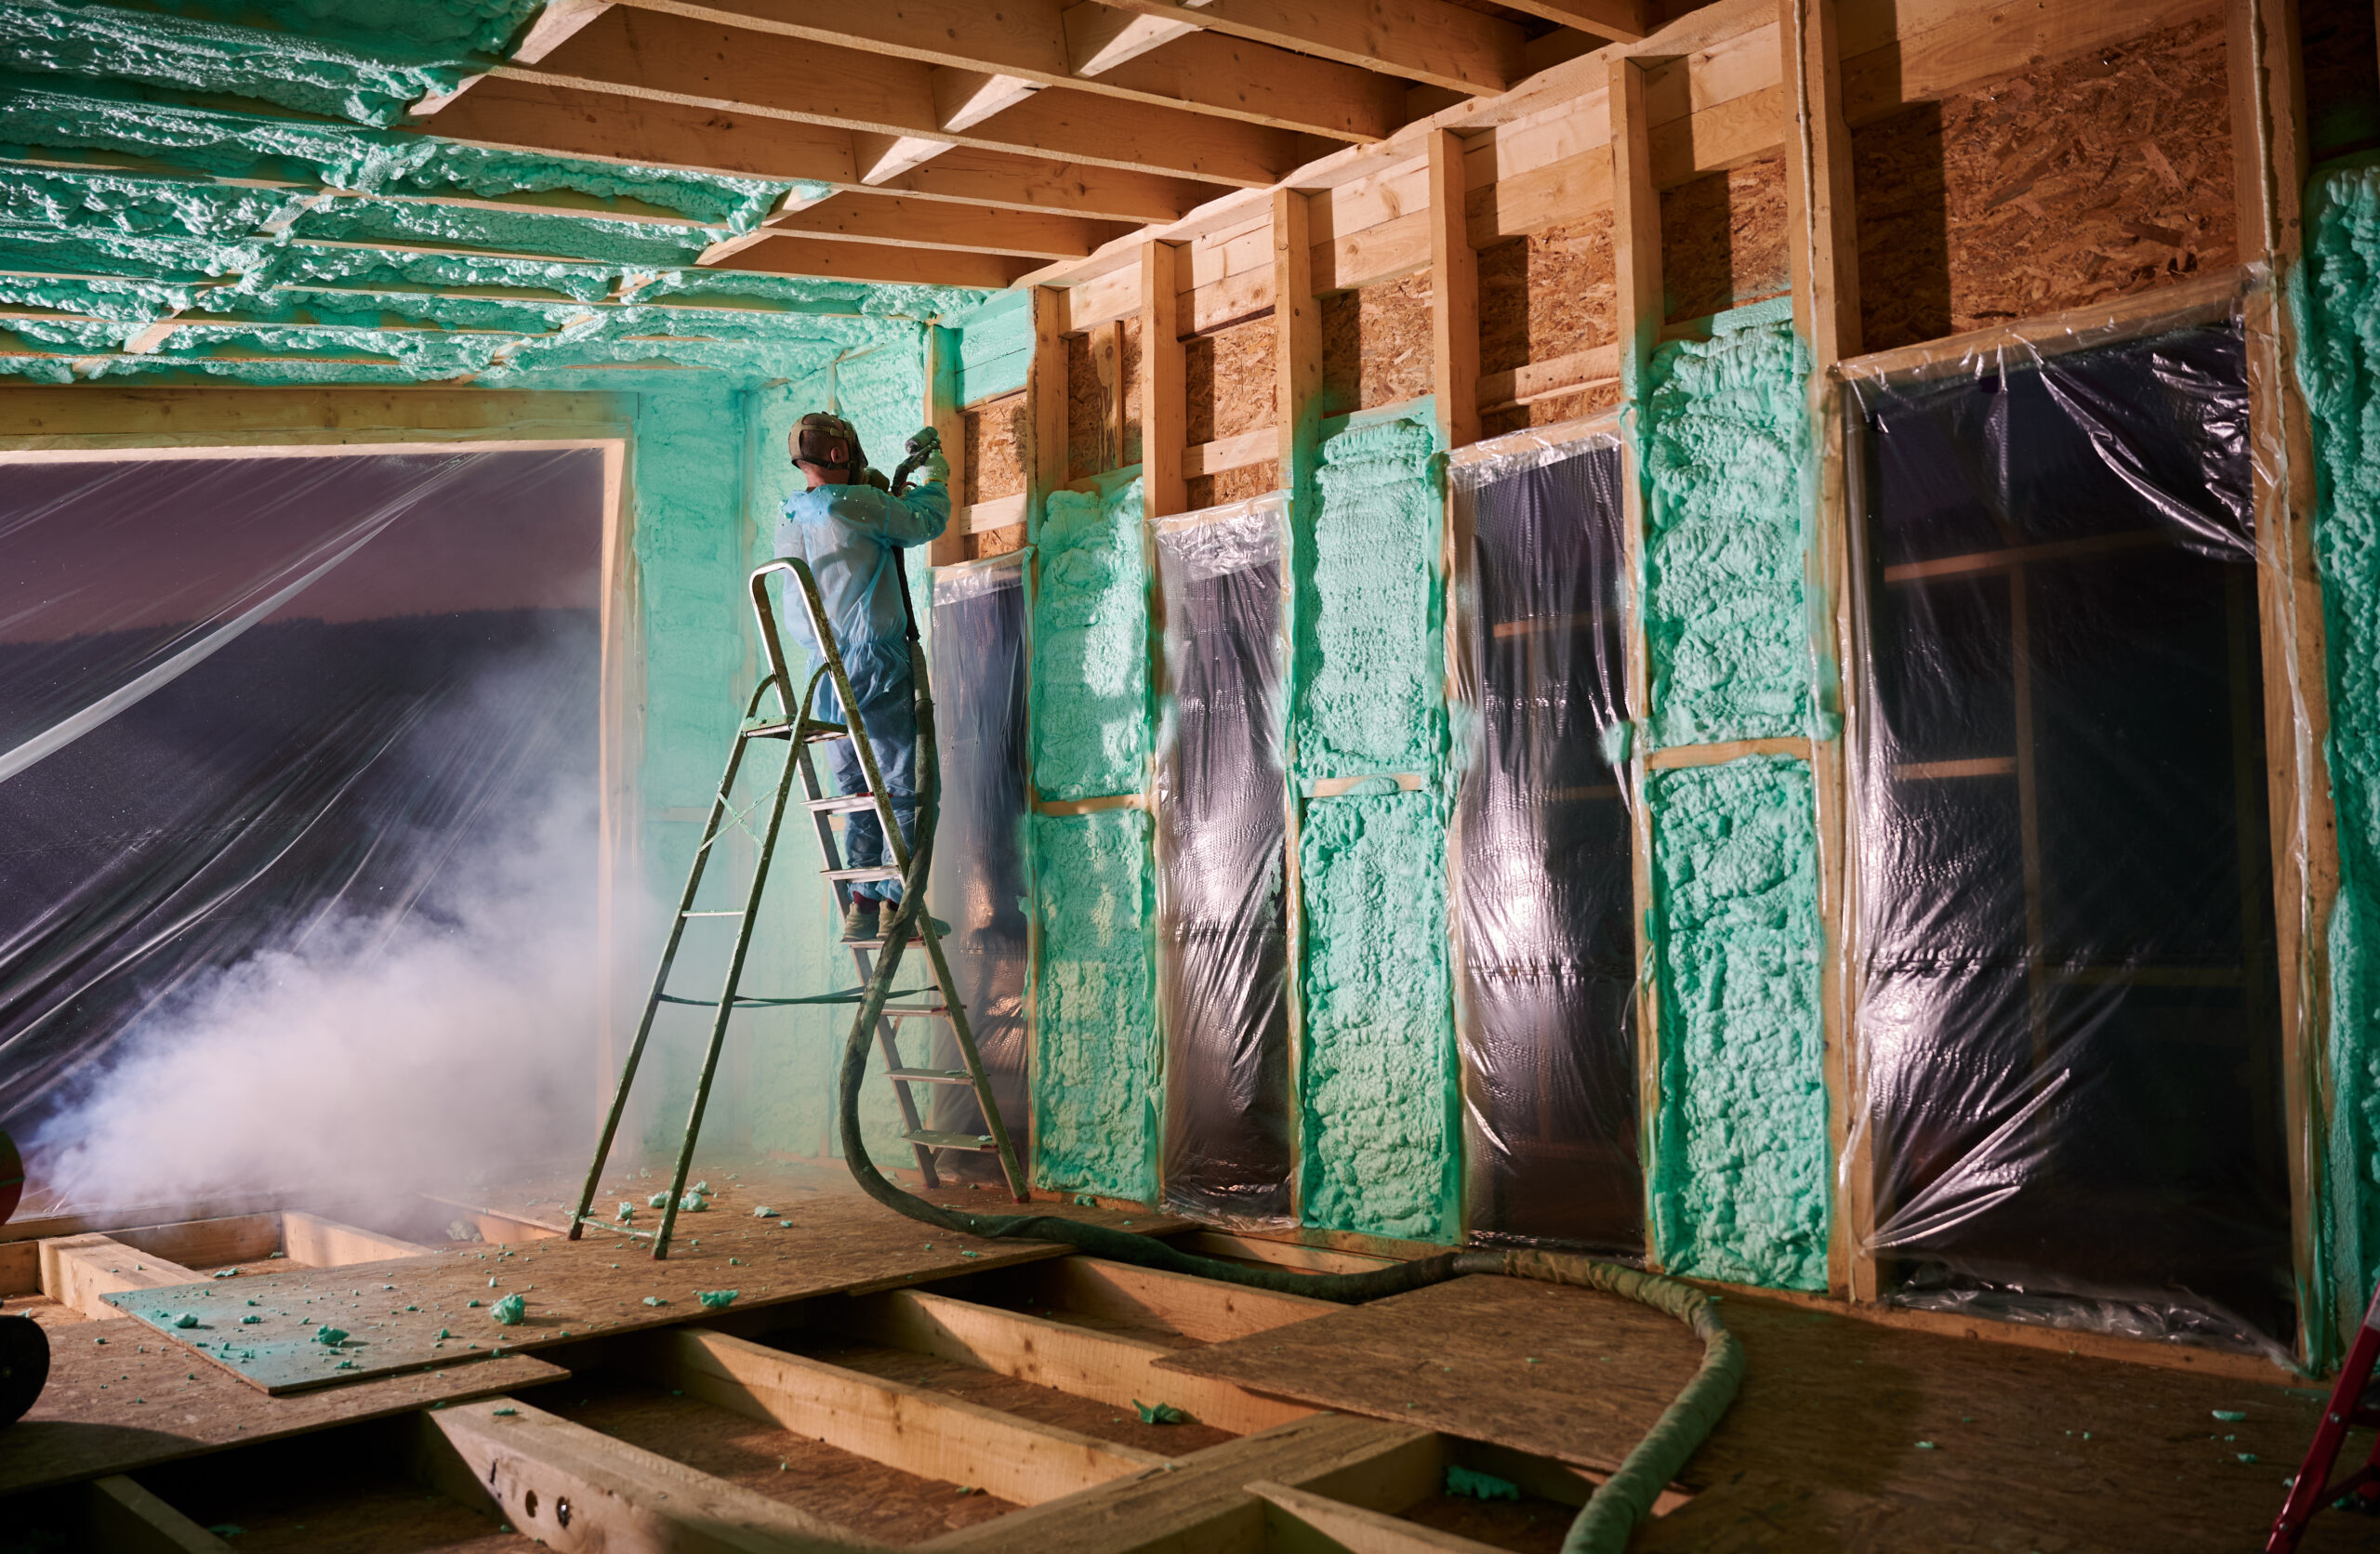 worker spraying polyurethane foam for insulating w 2023 11 27 05 18 42 utc scaled